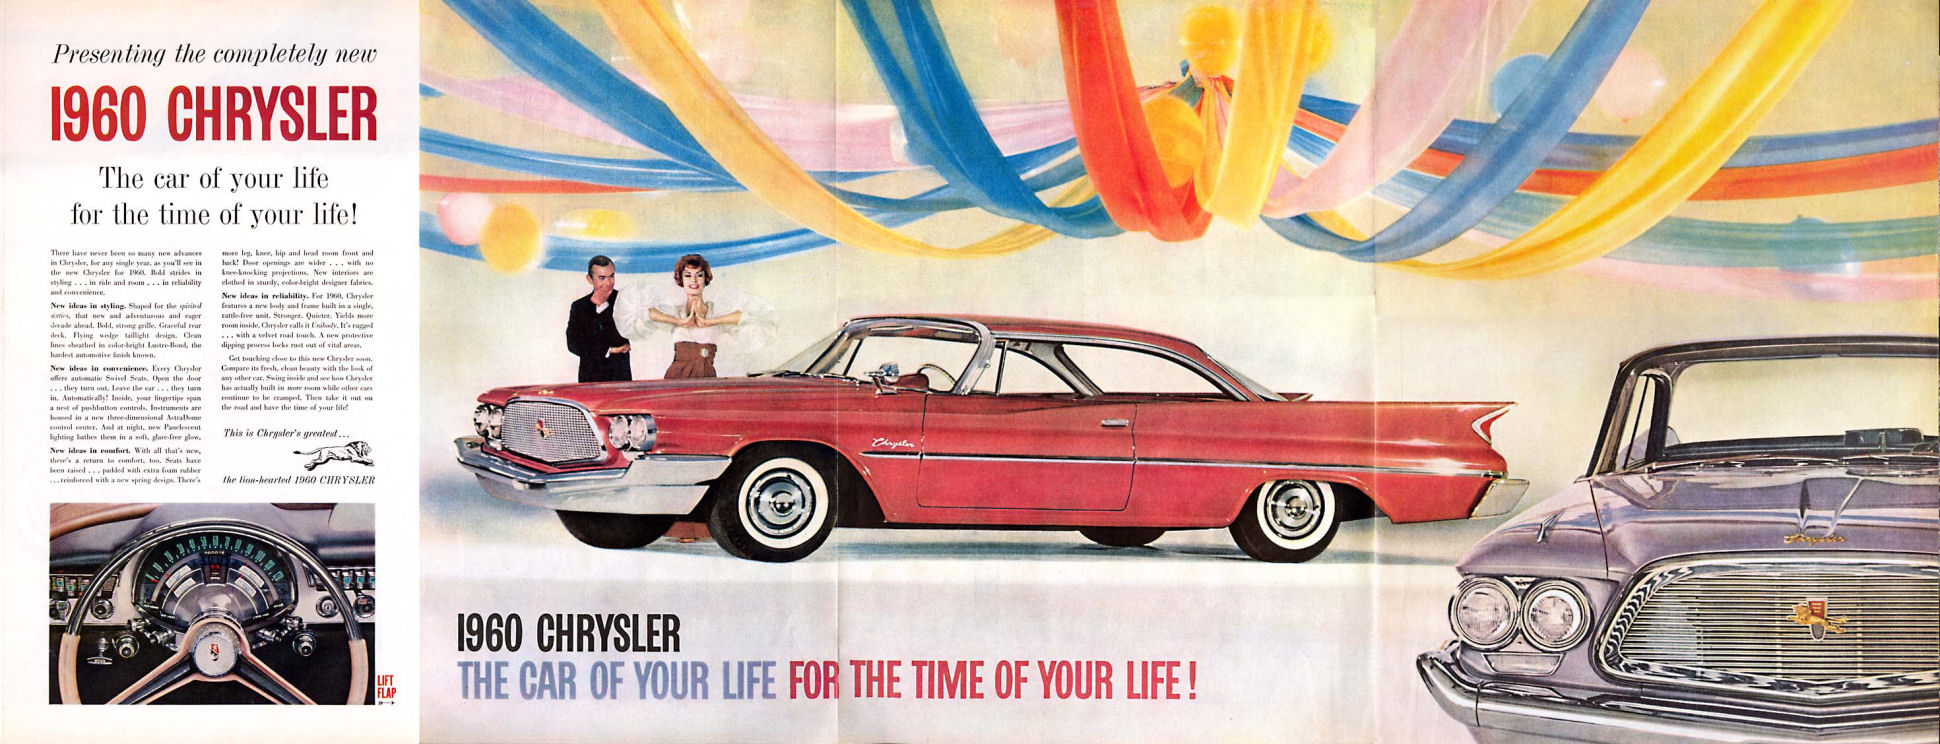 1960 Chrysler 3